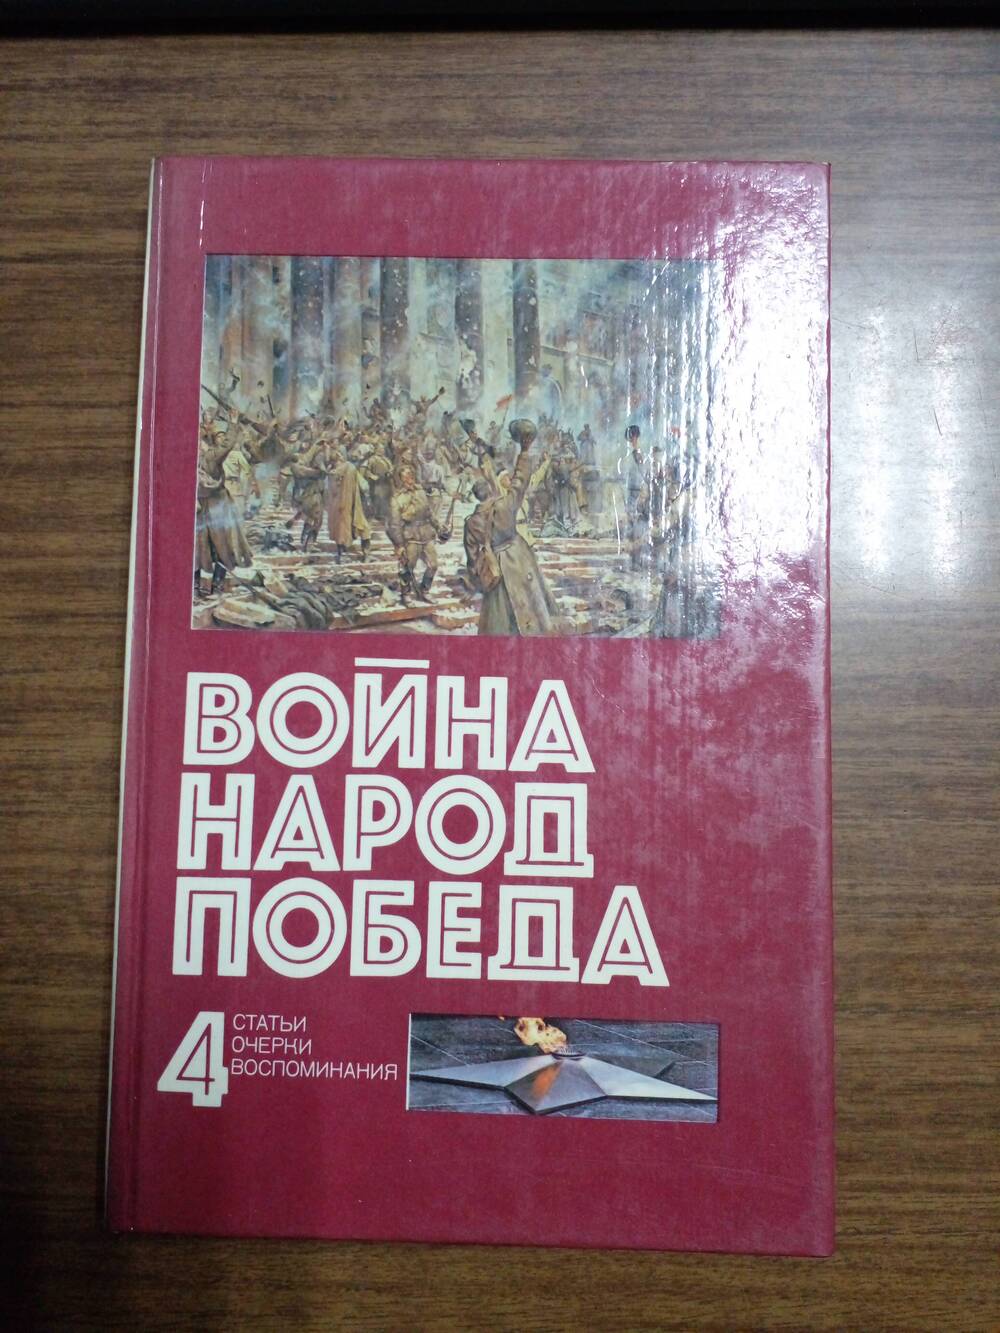 Книга «Война народная победа, 1941 – 1945 гг.» Статьи, очерки, воспоминания.